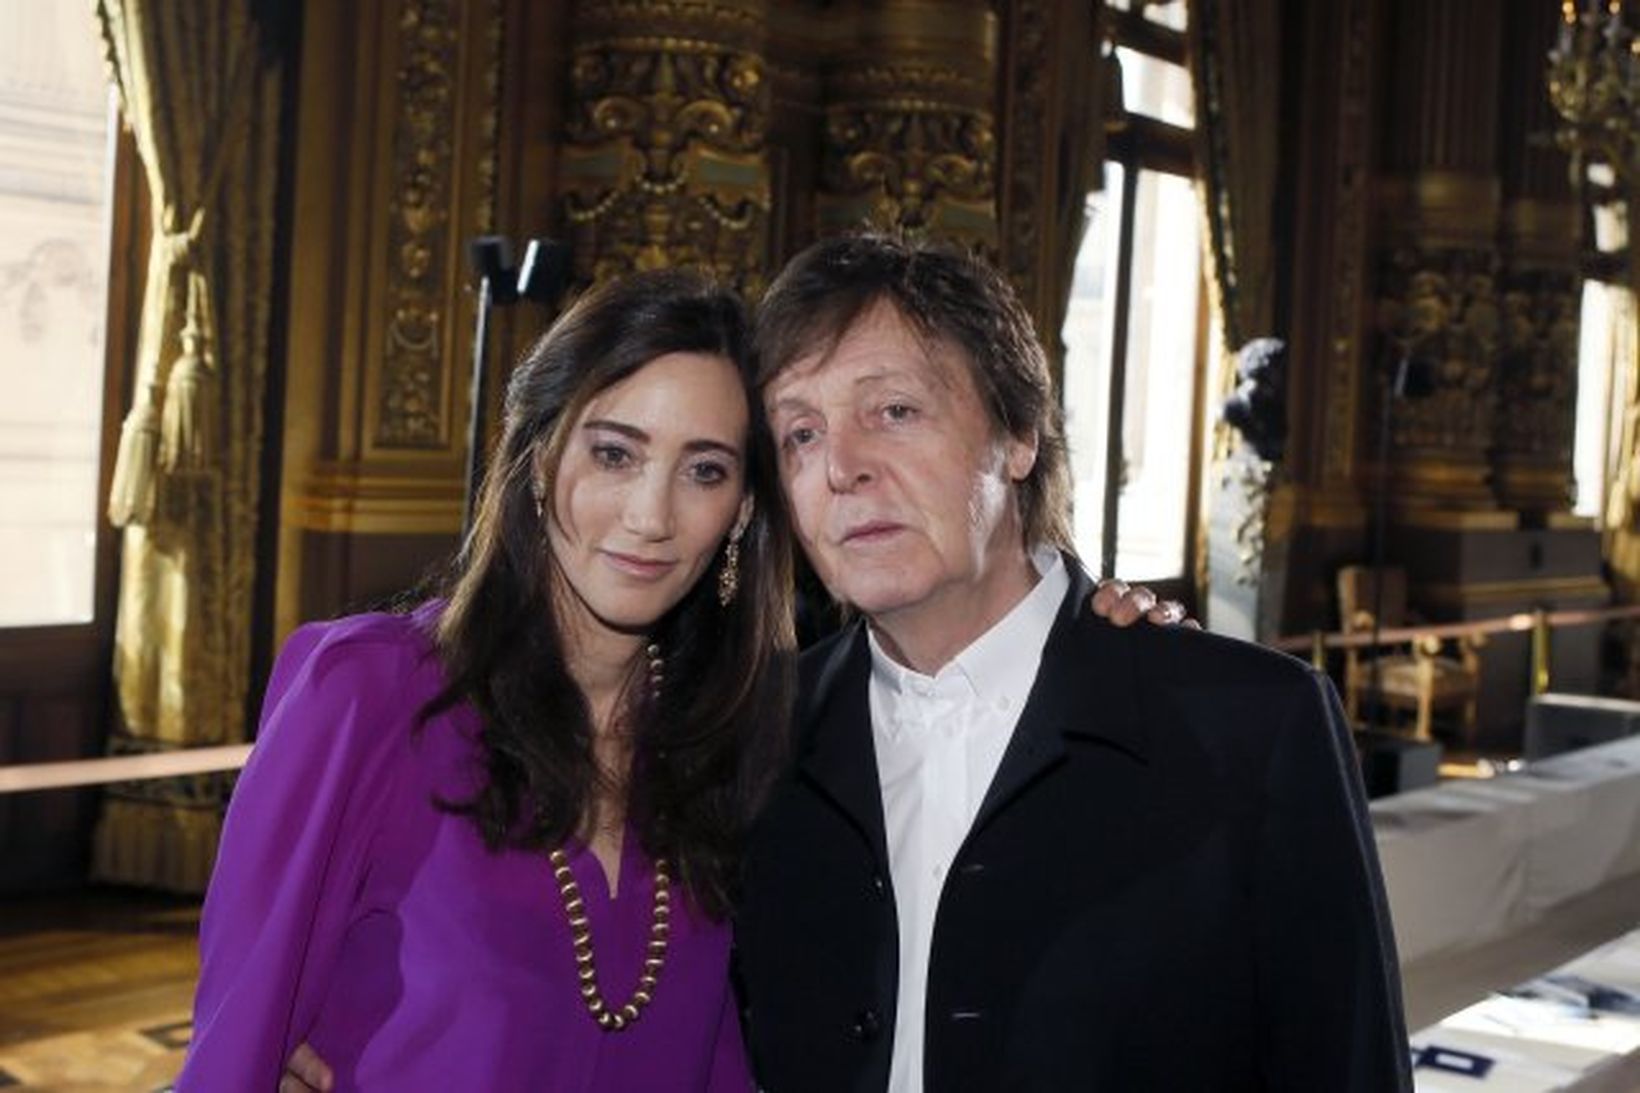 Paul McCartney og Nancy Shevell voru að kaupa sér íbúð.